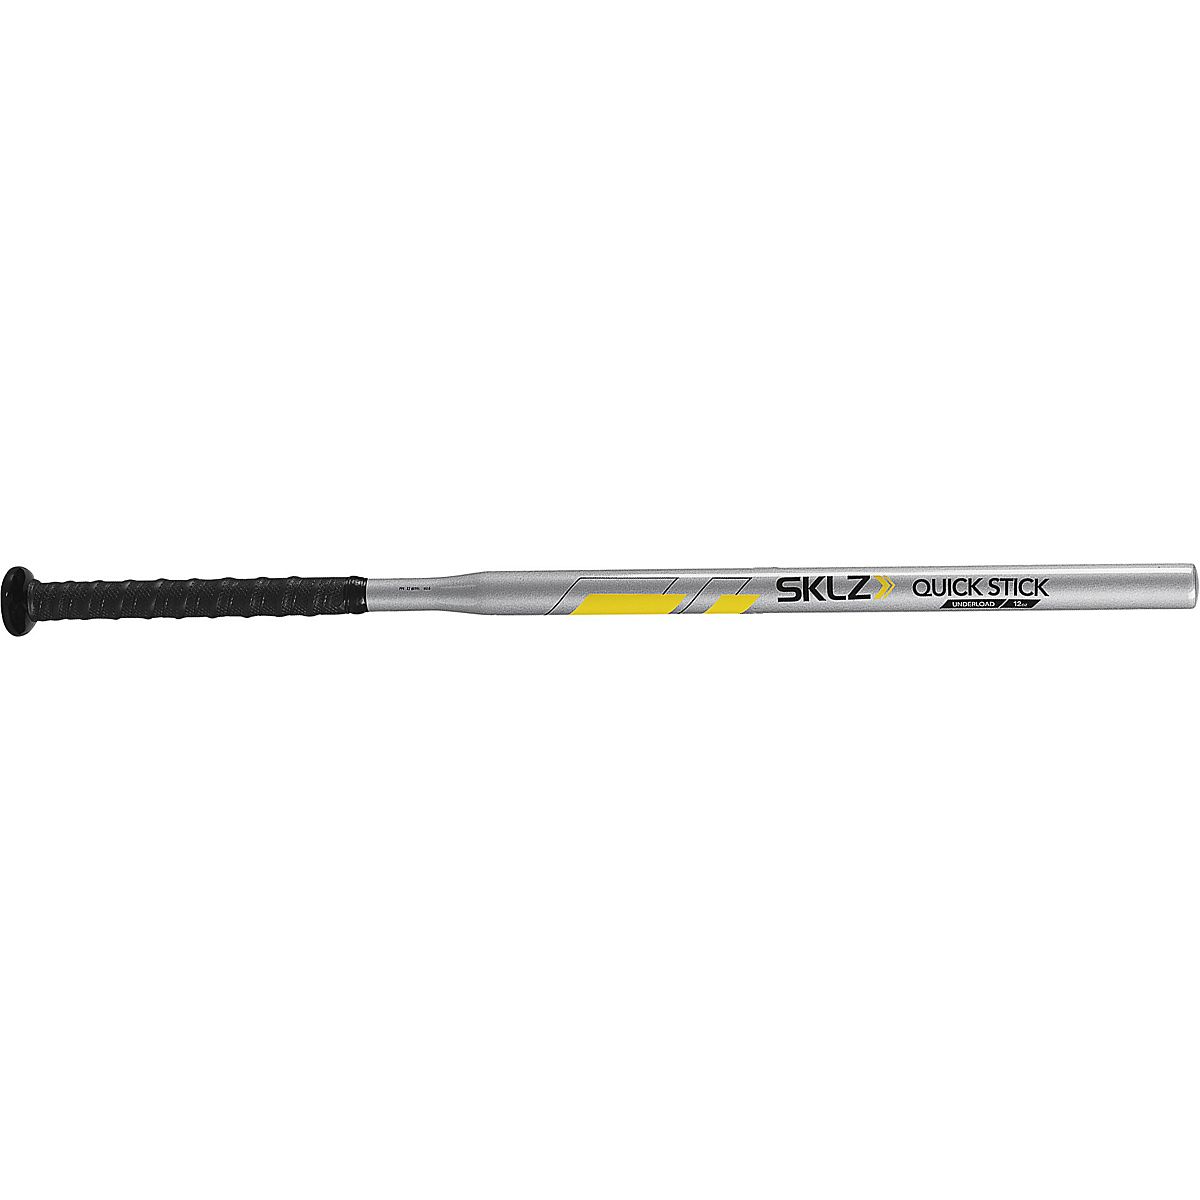 スキルズ パワースティック 30 Baseball Bat Inch Ounce Power Sklz Softball Stick Strength Training And For トレーニングバット 最大95 Offクーポン トレーニングバット